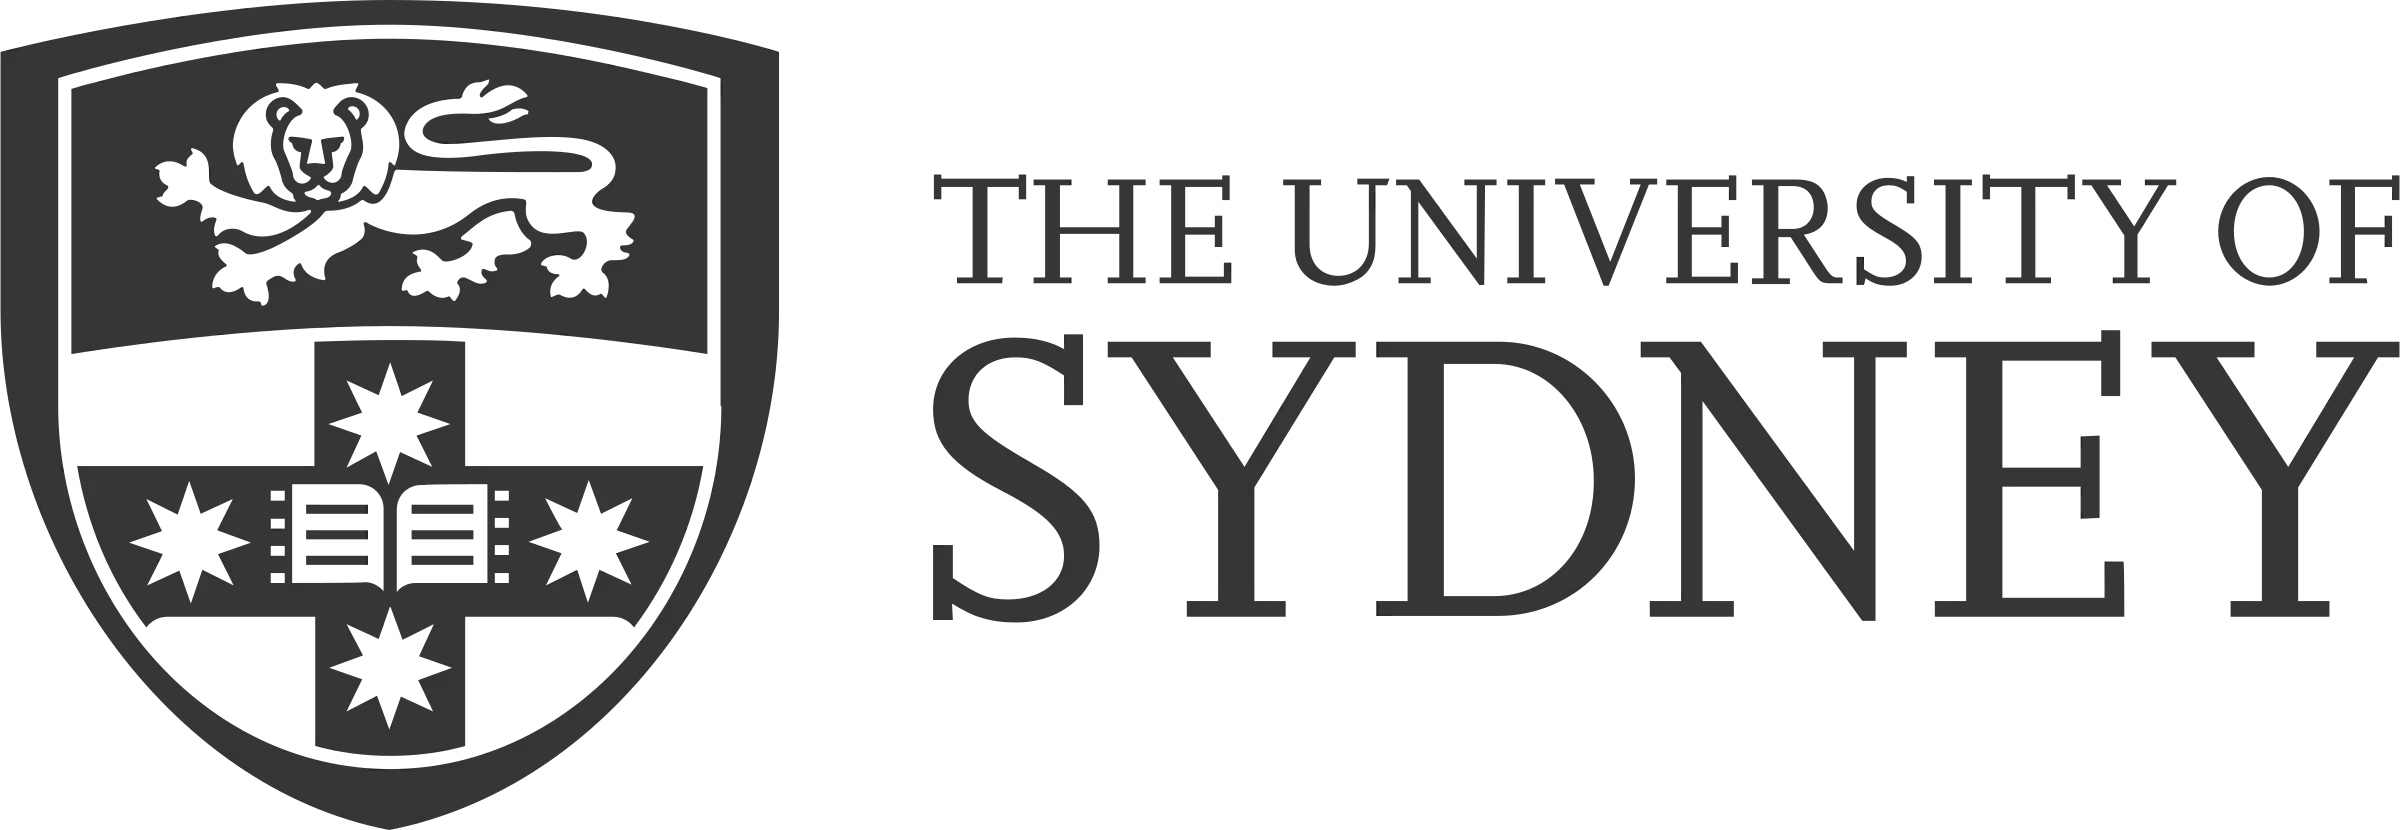 University Of Sydney logo